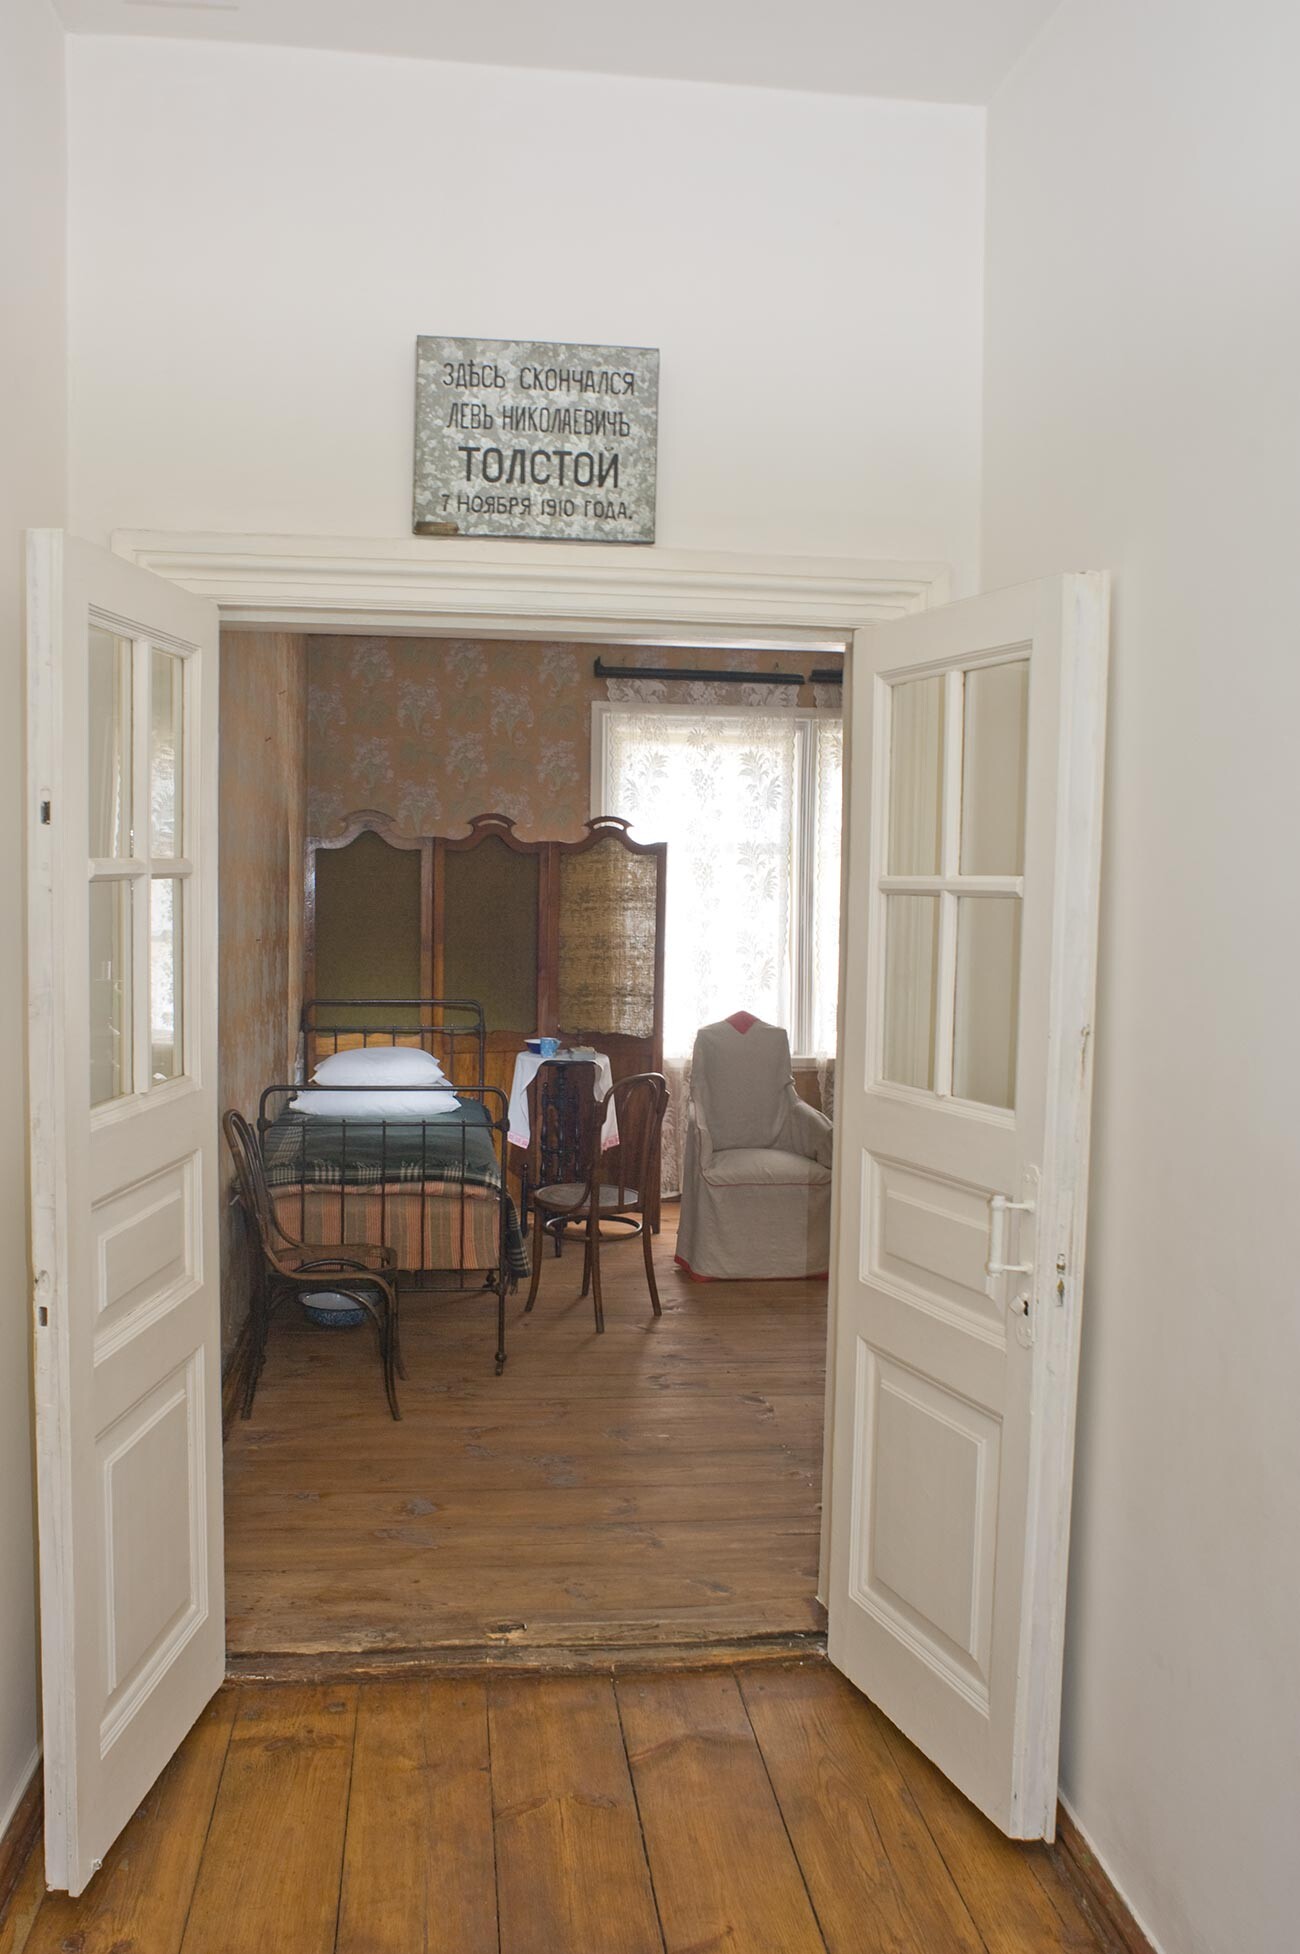 Maison du chef de gare, intérieur. Vue en direction de la chambre où Tolstoï a séjourné. Une plaque commémorative a été placée au-dessus de la porte peu après sa mort